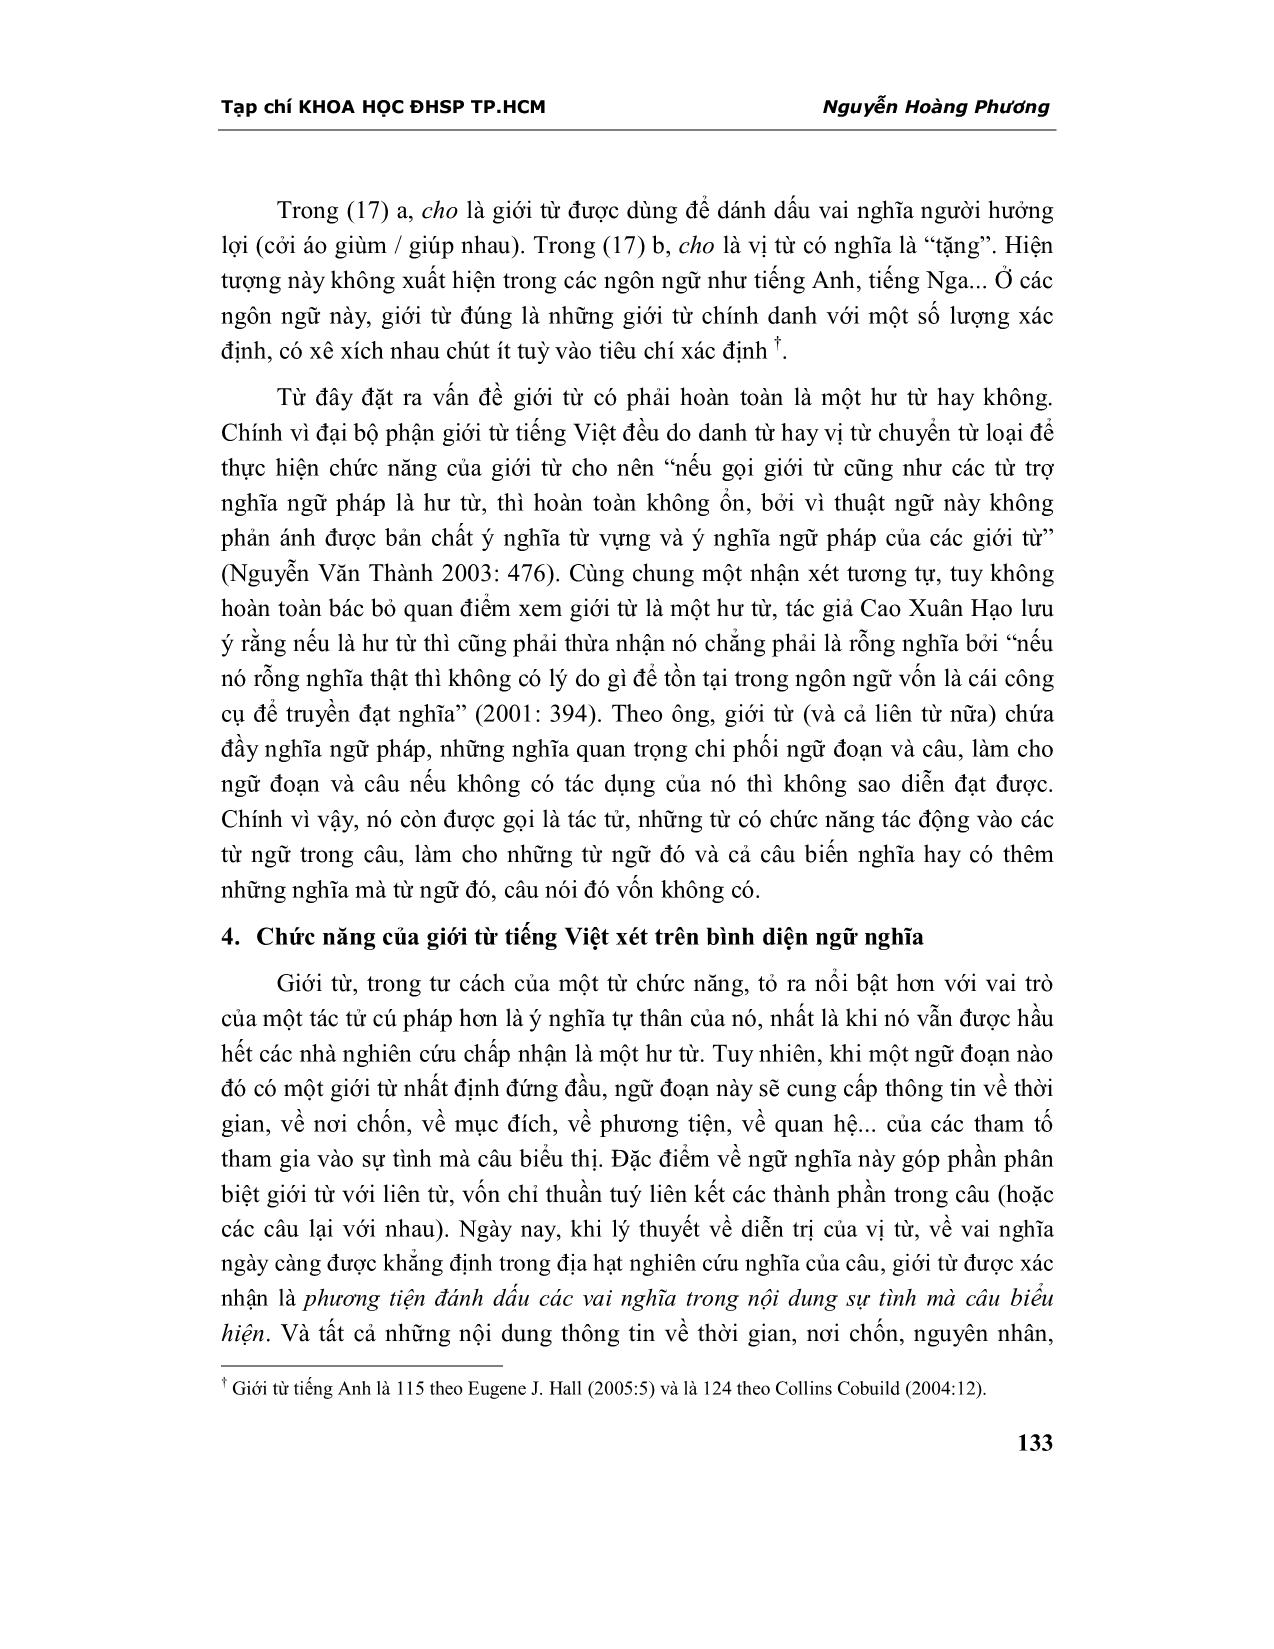 Chức năng của giới từ Tiếng Việt (xét trên bình diện ngữ pháp và ngữ nghĩa) trang 5